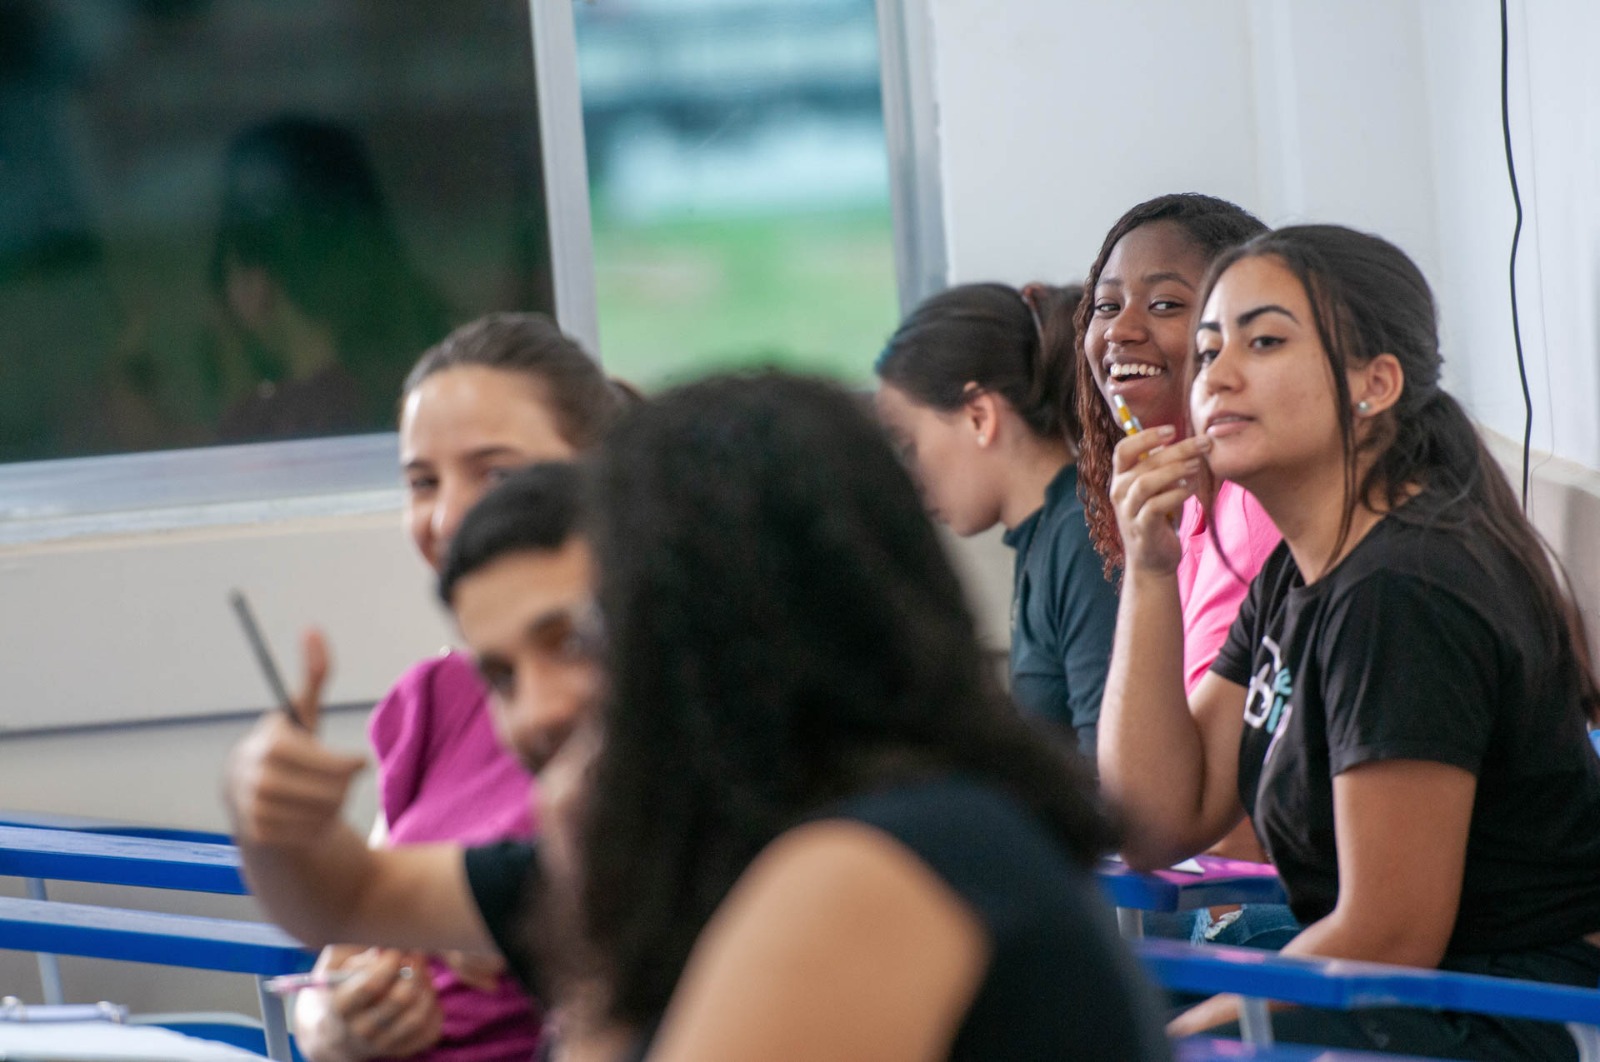 Descrição da imagem: Fotografia de seis estudantes sentados em carteiras escolares em uma sala de aula. Na primeira fileira, há duas mulheres e um homem, que faz sinal de positivo para a câmera. Atrás estão três estudantes, mulheres, sorrindo. Duas são brancas e uma negra.